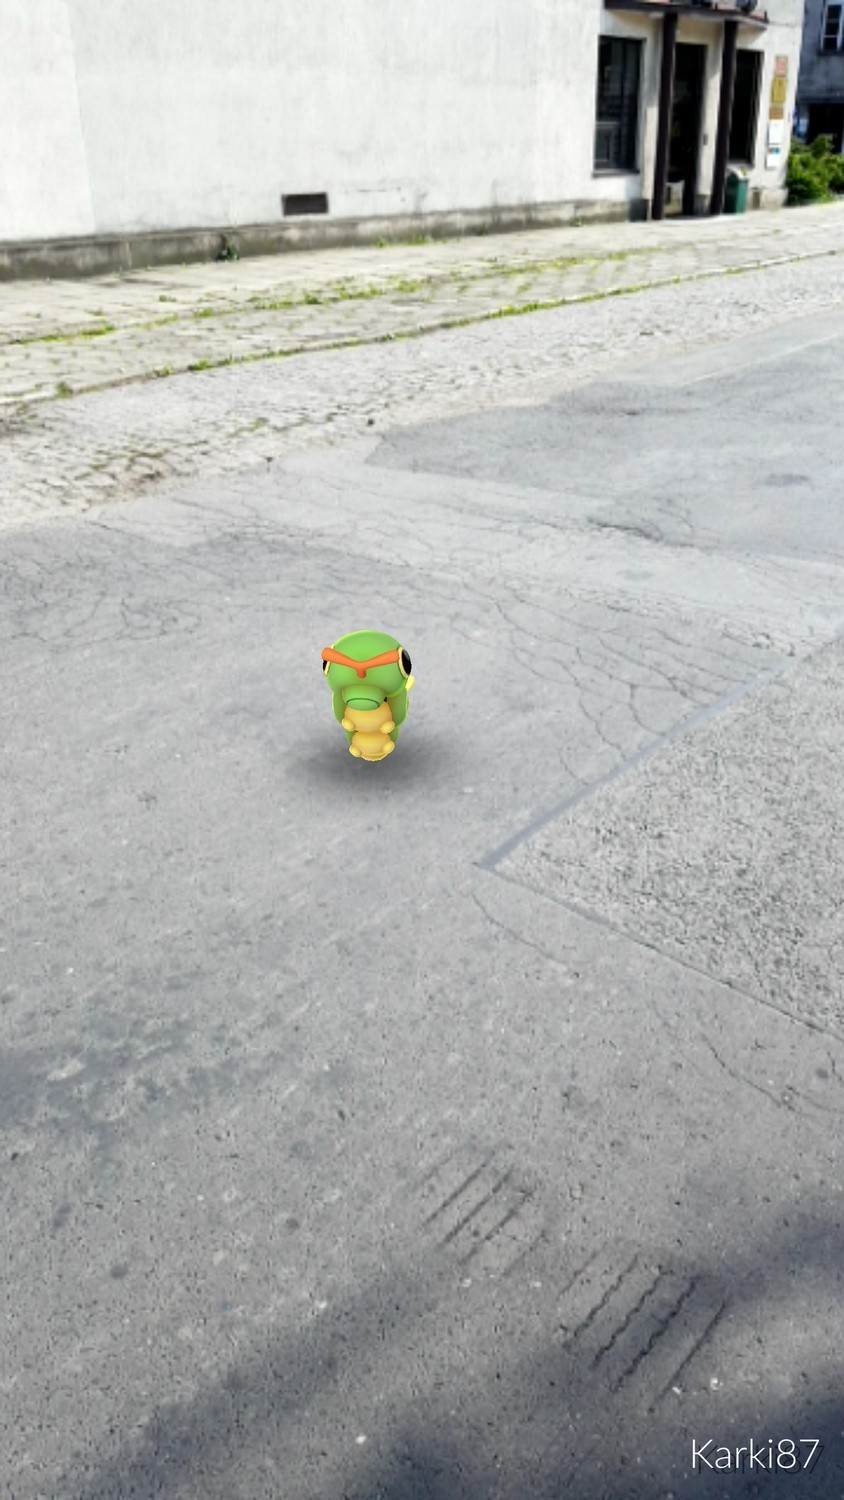 Pokemon Go - pokemony opanowały ulice Krakowa! [PRZYŚLIJ ZDJĘCIE POKEMONA]